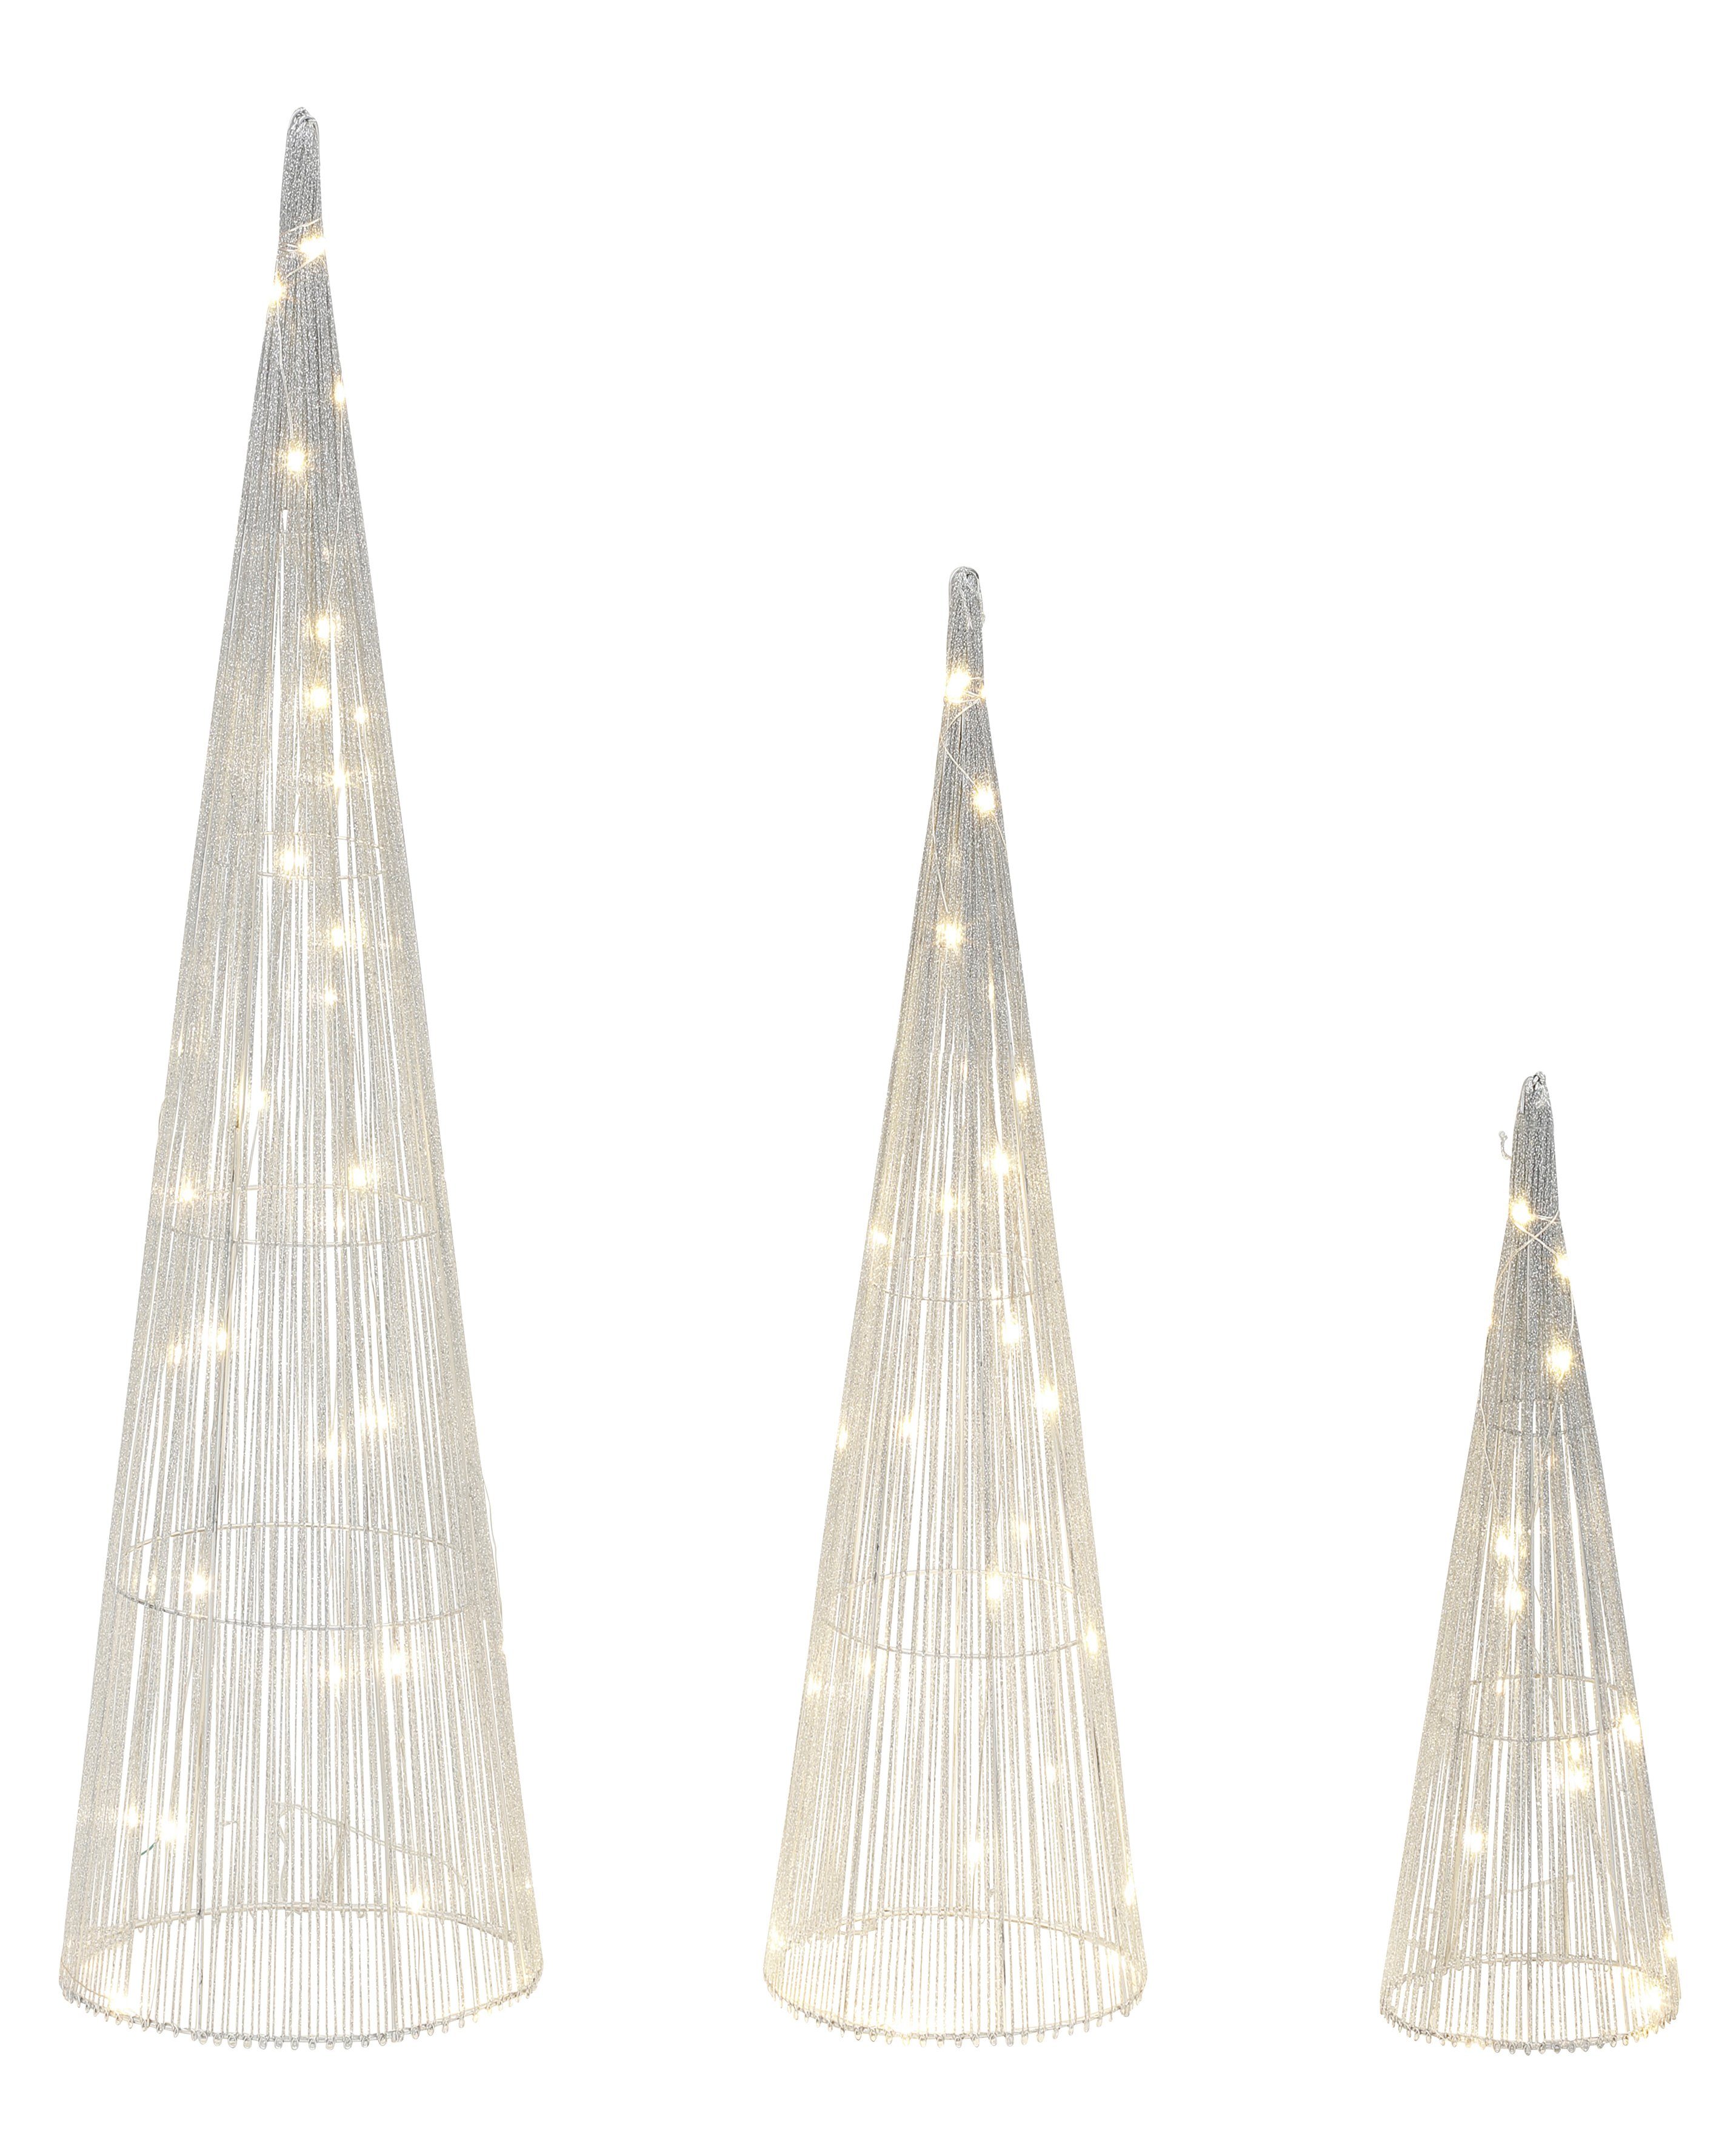 Star-Max LED Dekolicht Pyramiden Warmweiß, LED integriert, Leucht schimmernde in Größen LED-Beleuchtung, Effektvolle 3 Pyramiden fest Weihnachtsdeko, silberfarben mit LED-Bäume